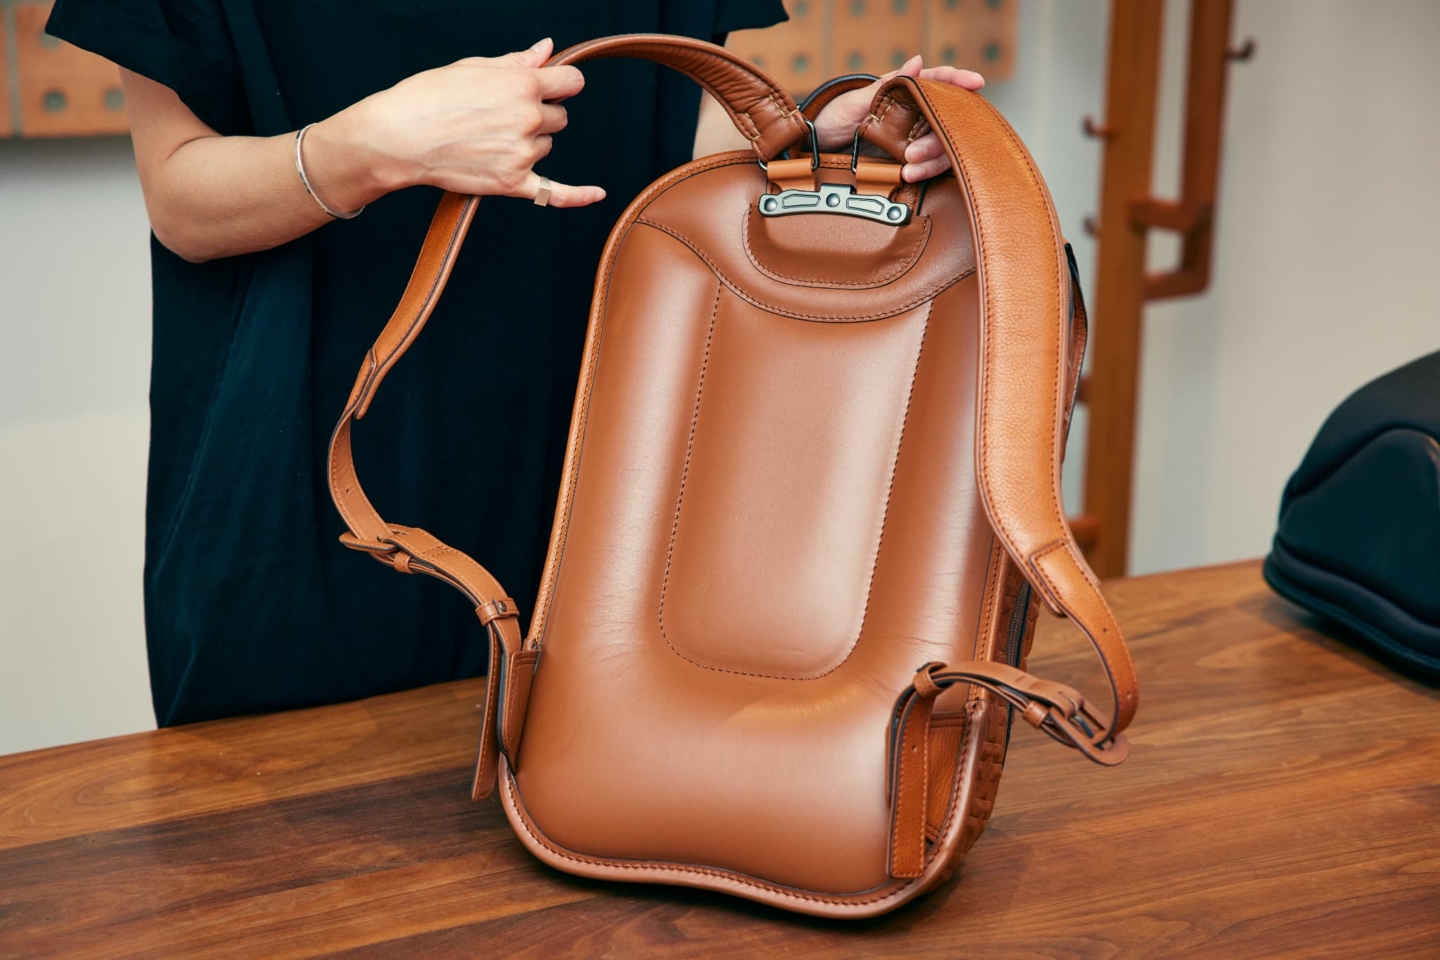 Le nouveau défi de Tsuchiya Kaban : un modèle innovant de sac à dos qui met davantage en valeur les charmes du cuir